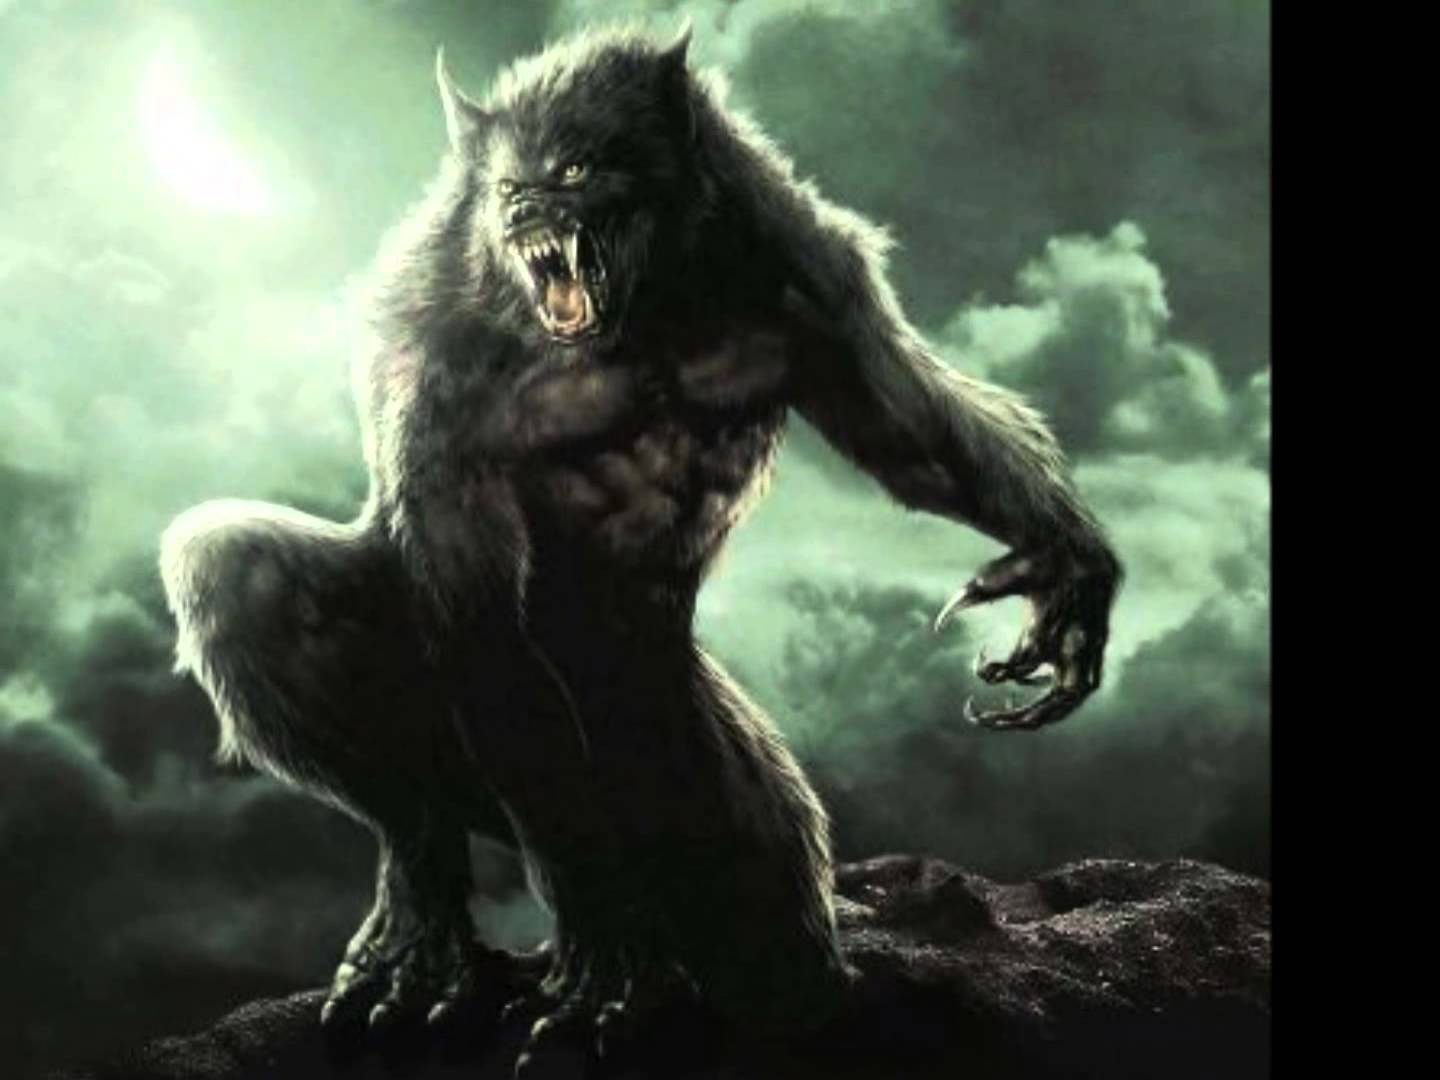 Van Helsing Werewolf Wallpapers - Top Free Van Helsing Werewolf ...